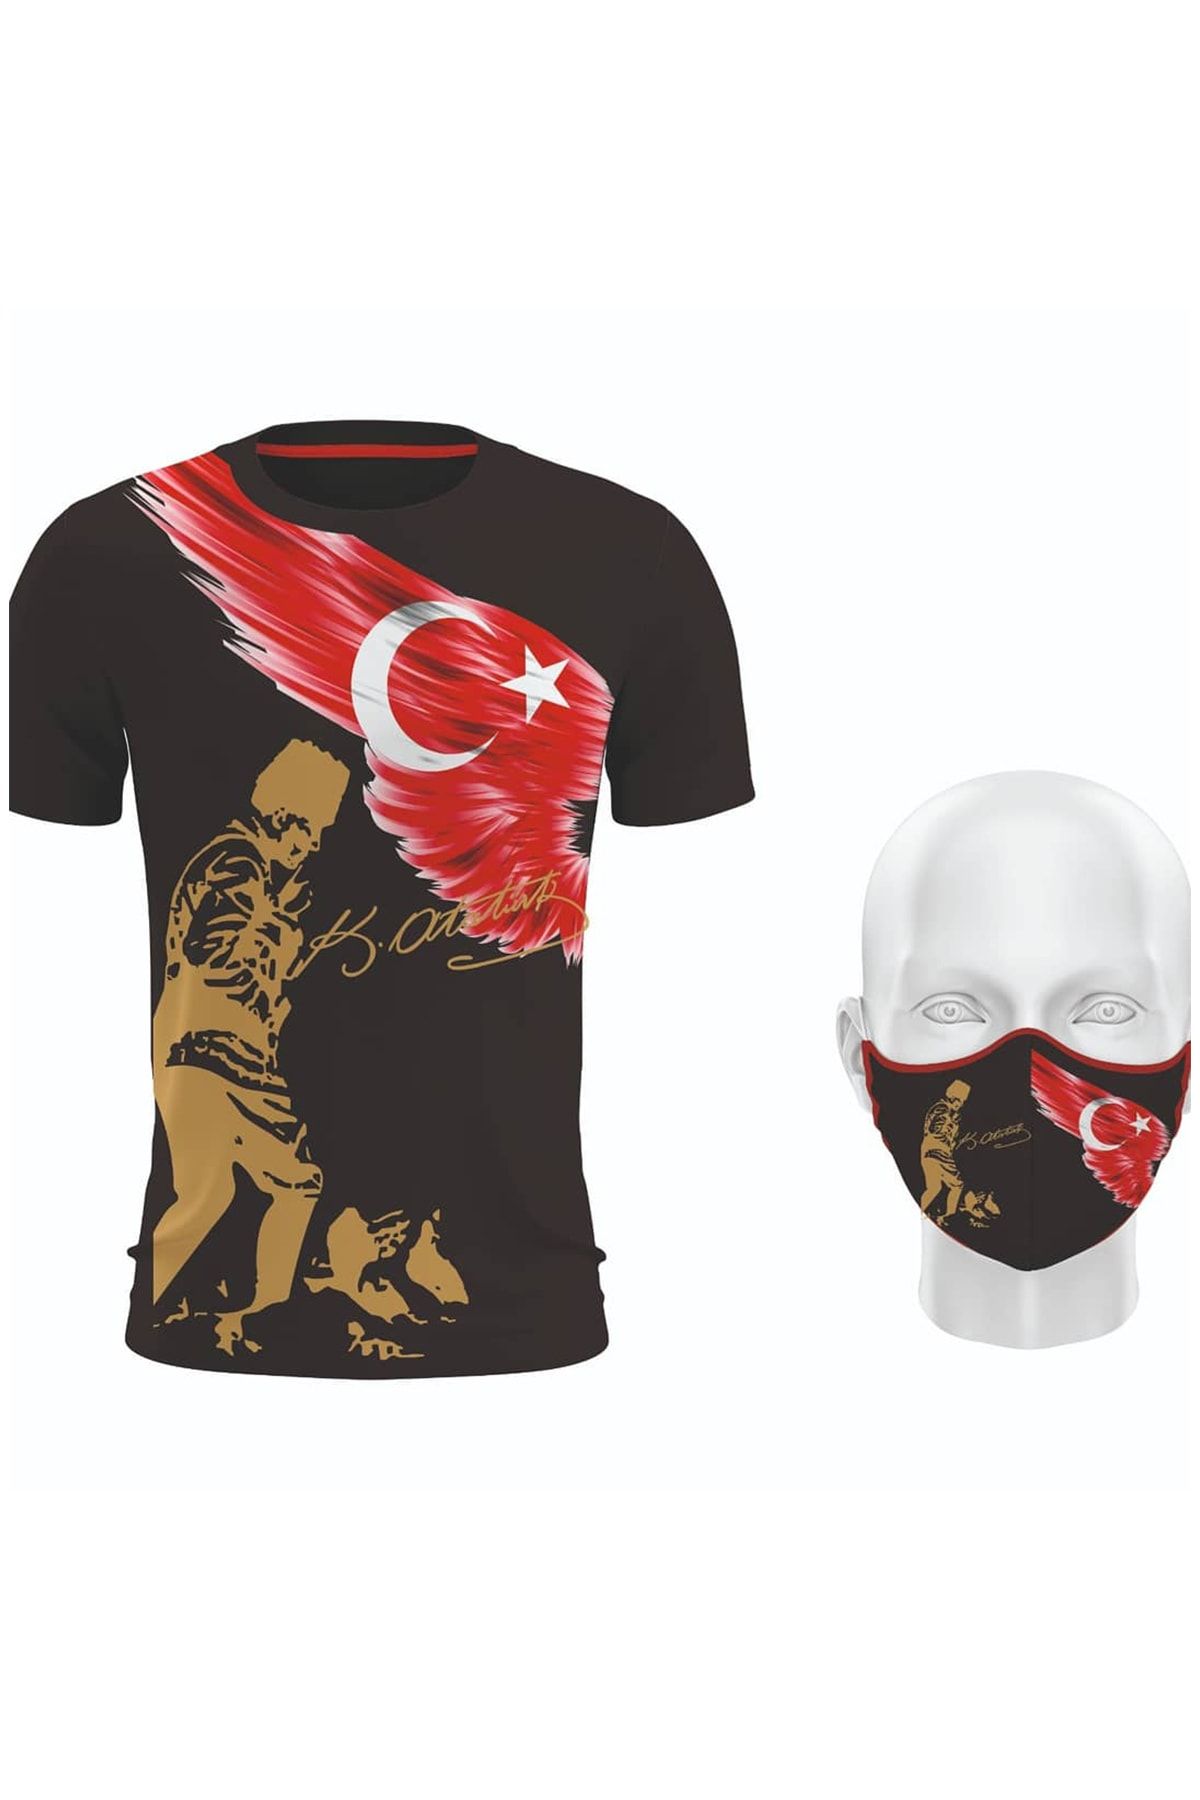 Hediyexpres Cumhuriyet Bayramı'na Özel Mustafa Kemal Atatürk Ve Türk Bayrağı Baskılı Siyah T-shirt Ve Maske